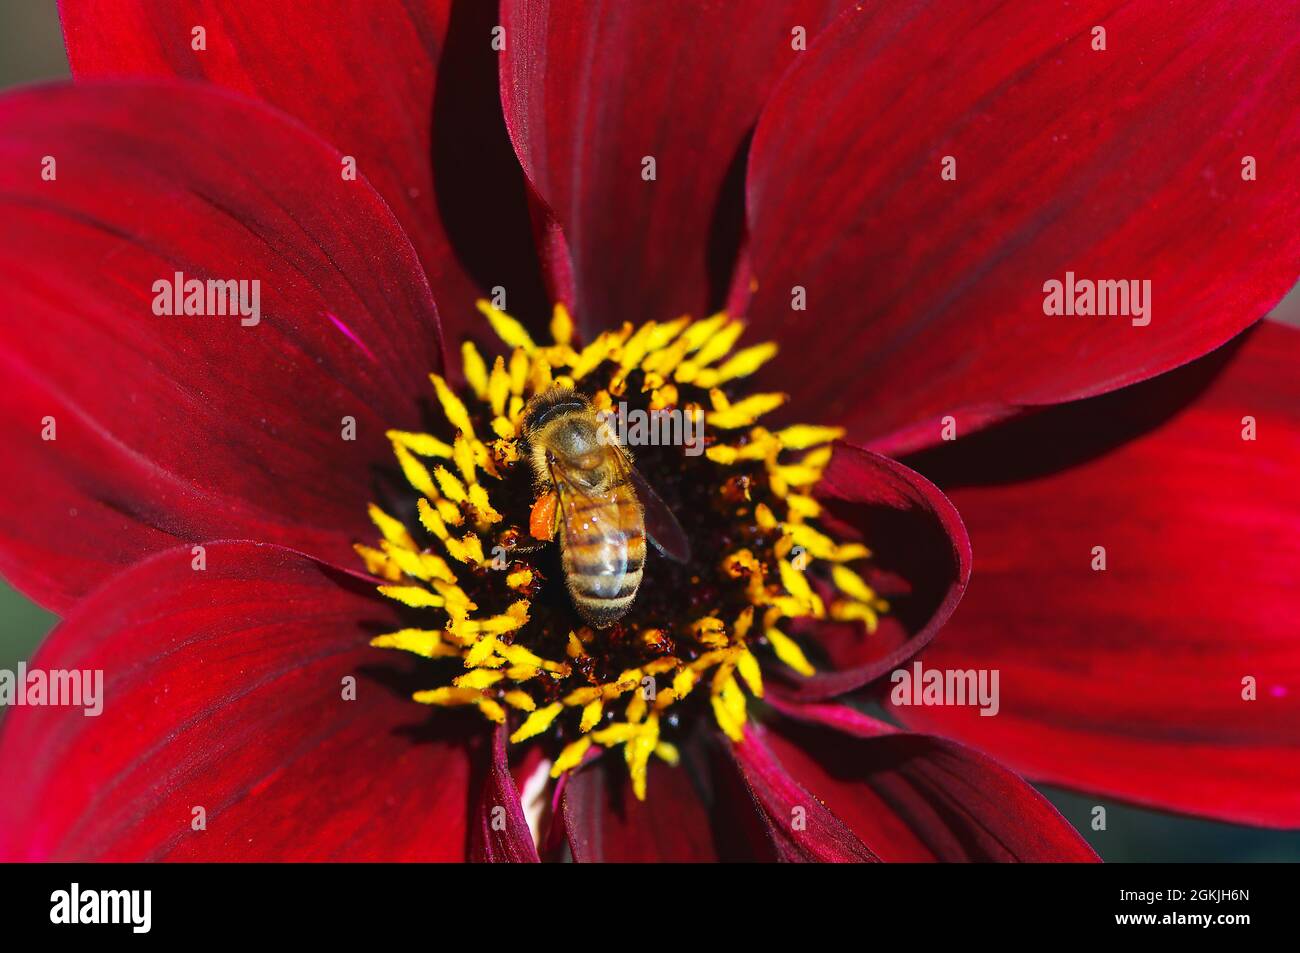 Une abeille occidentale (API mellifera) au centre d'une fleur de Dahlia rouge (Merlot Madness). Banque D'Images